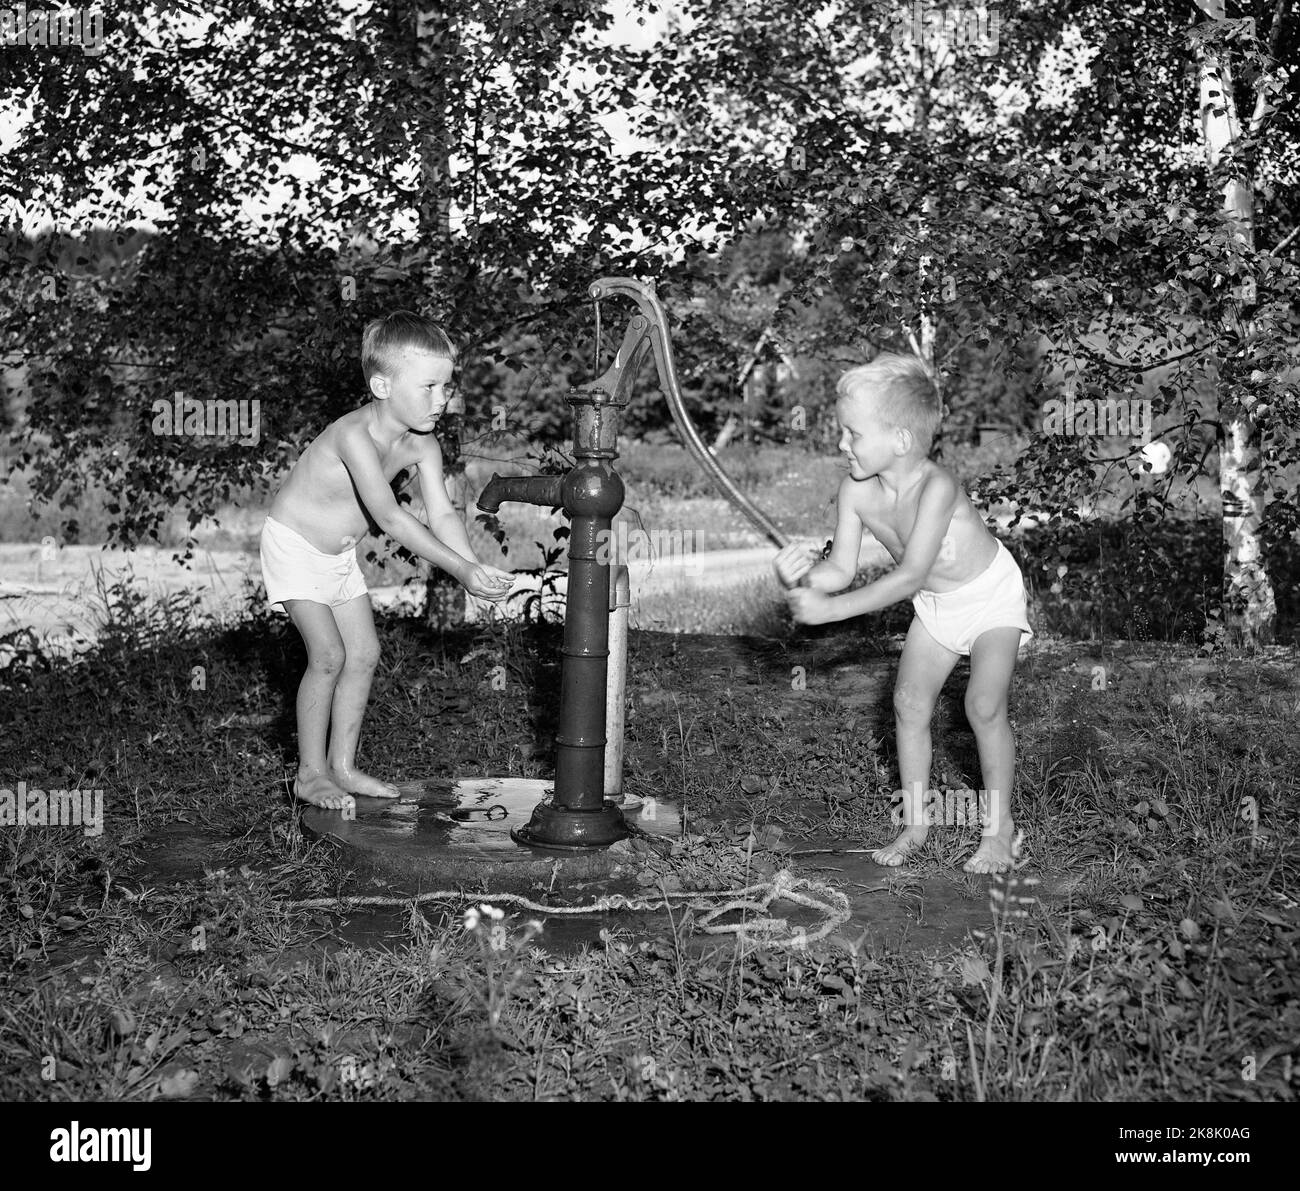 SEM, Borre, Vestfold, 19530801 Sommer auf dem Bauernhof. Zwei kleine Jungen - die vielleicht auf einem Sommerurlaub auf dem Bauernhof sein - kühlen sich mit Wasser aus der Wassersäule / Wasserpumpe ab. Foto: NTB / NTB Stockfoto